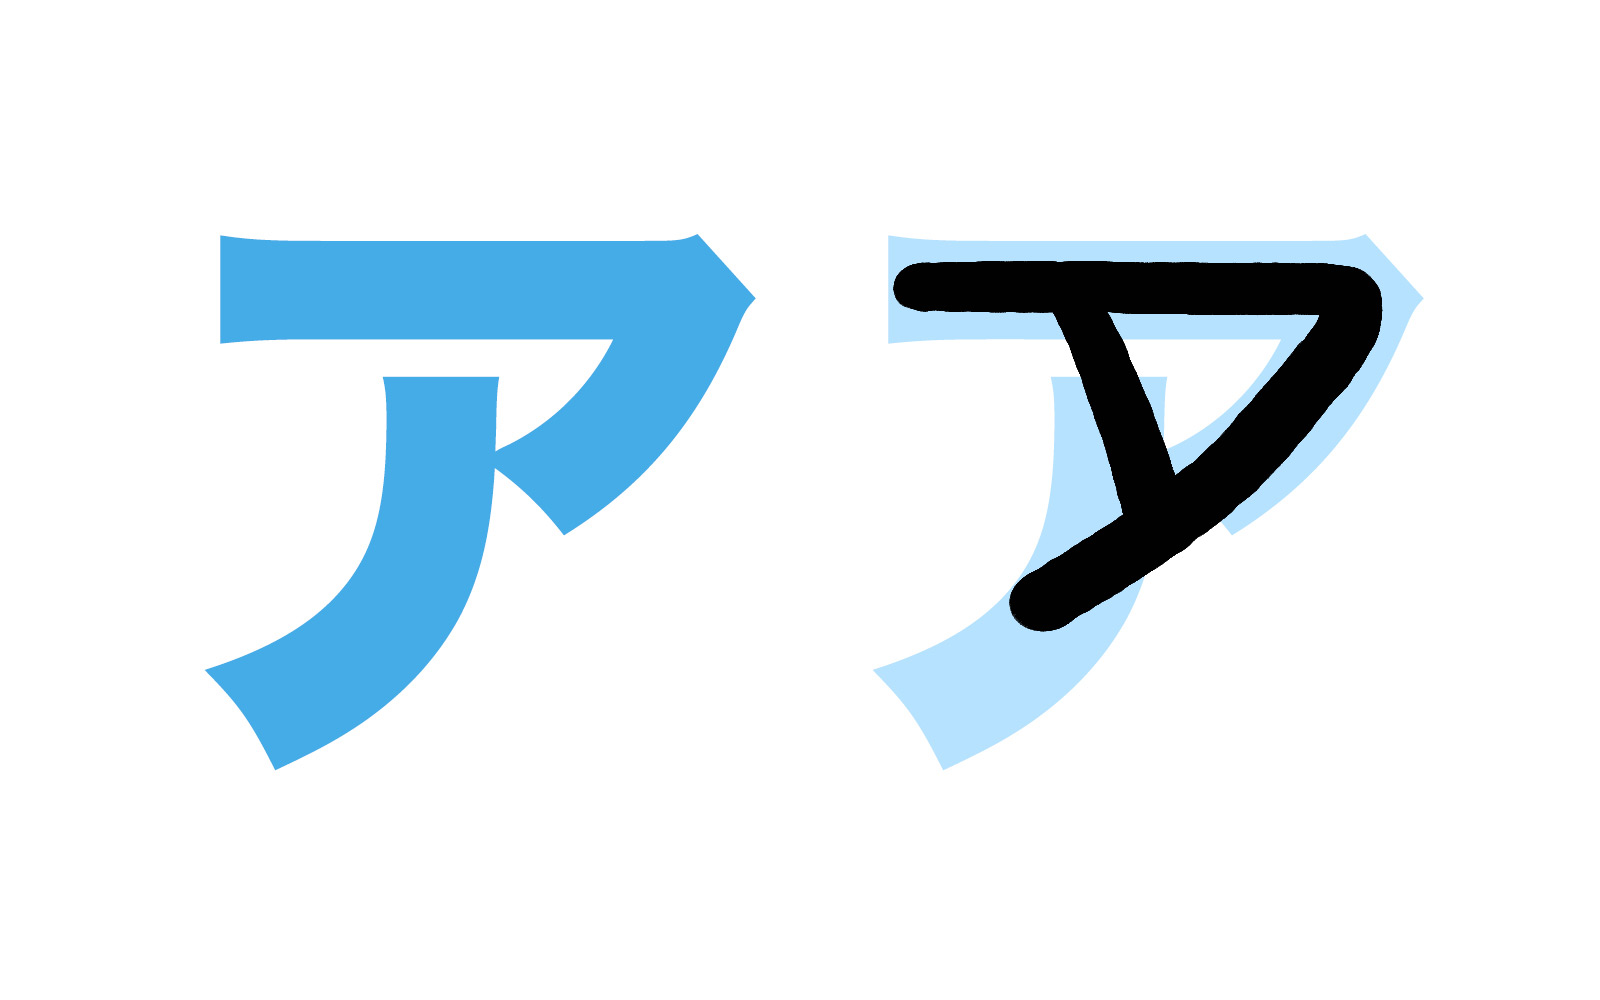 Bảng chữ cái tiếng Nhật Katakana, cách đọc, cách viết, phát âm... - ảnh 2